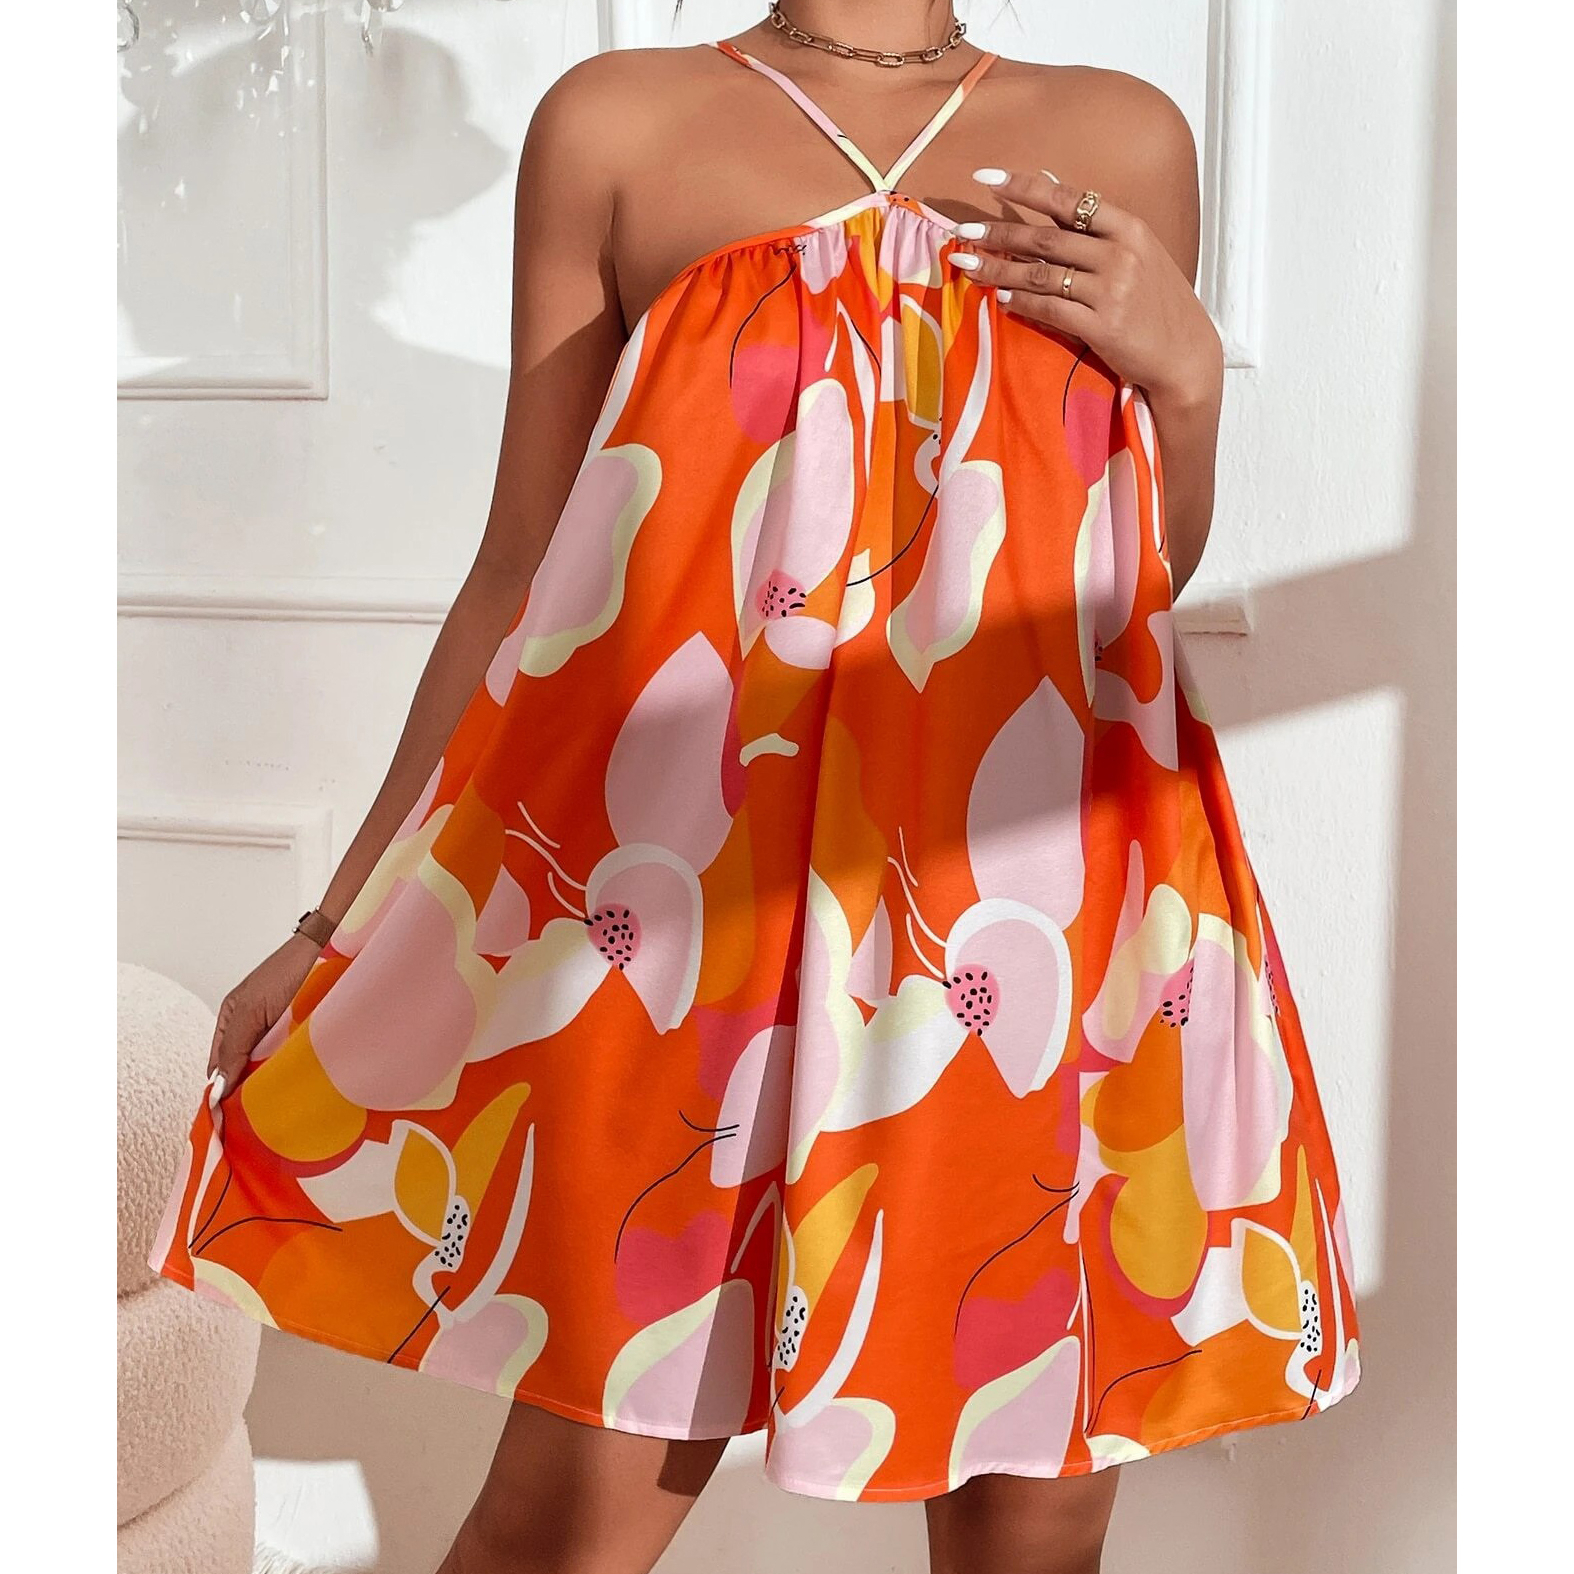 Allover Print Cami Dress - Multicolor, Small(4)